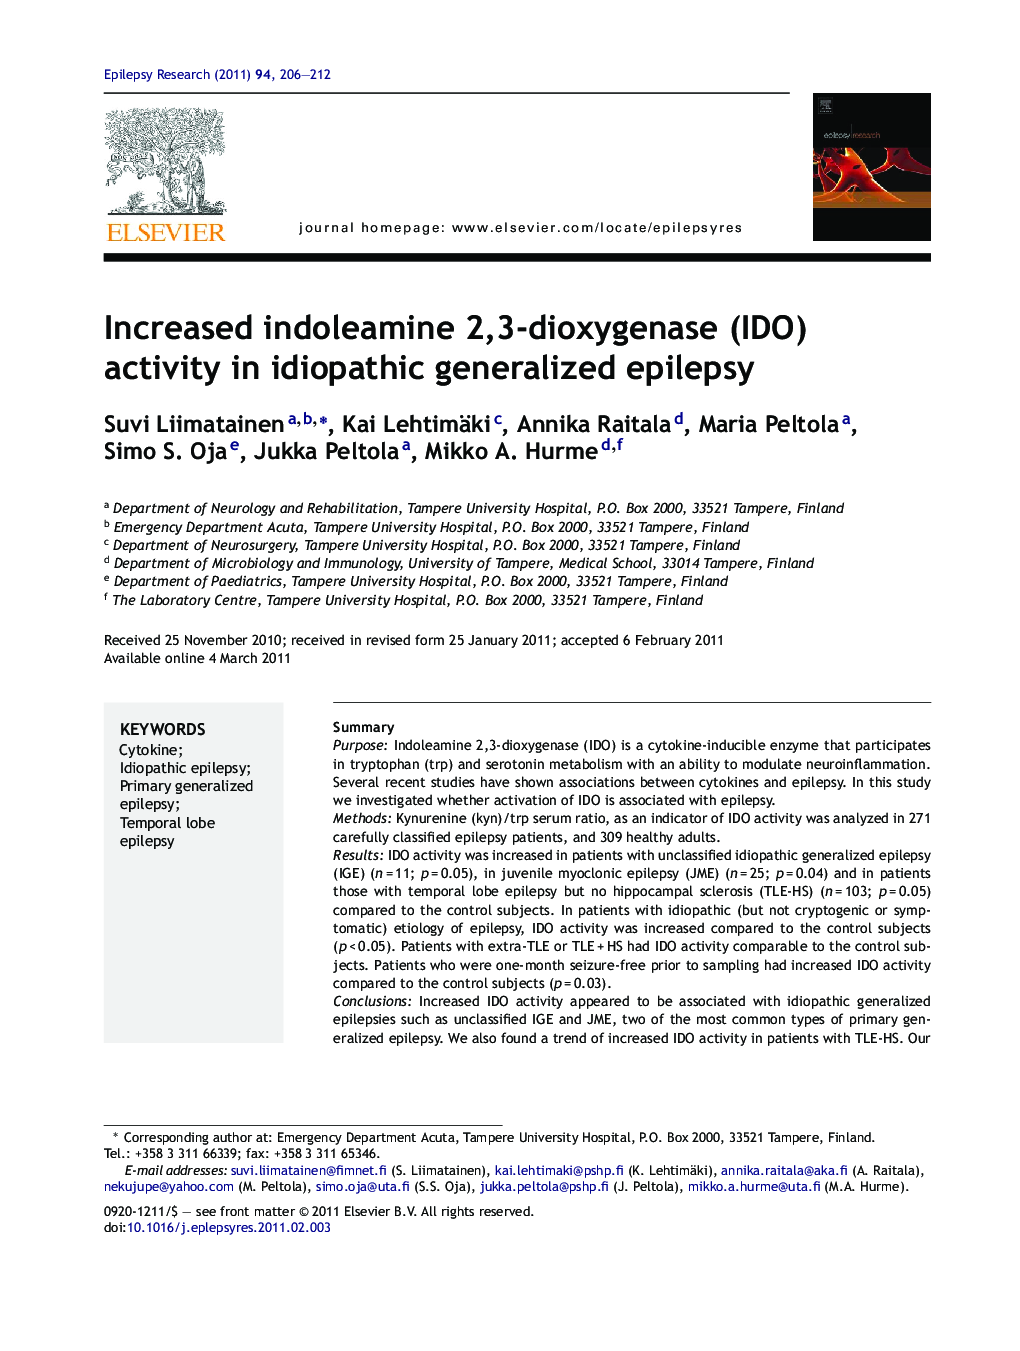 Increased indoleamine 2,3-dioxygenase (IDO) activity in idiopathic generalized epilepsy